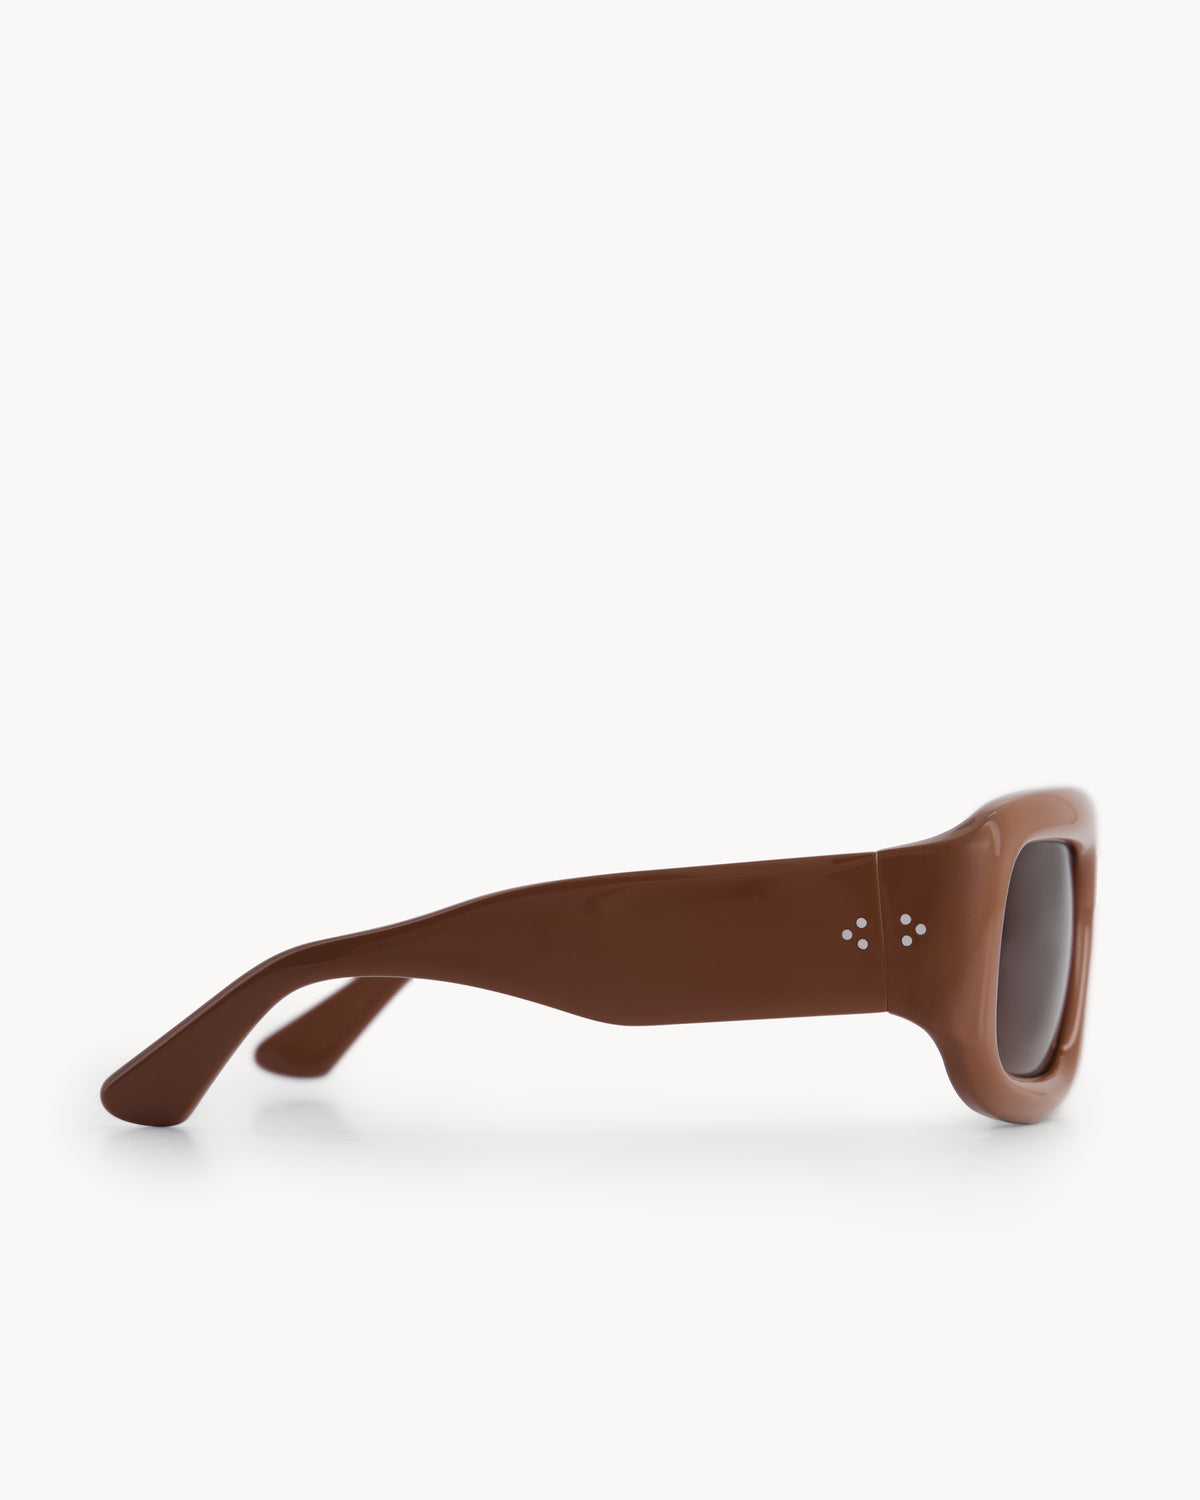 Port Tanger Mauretania Sunglasses in Wardi Acetate and Tobacco Lenses 4